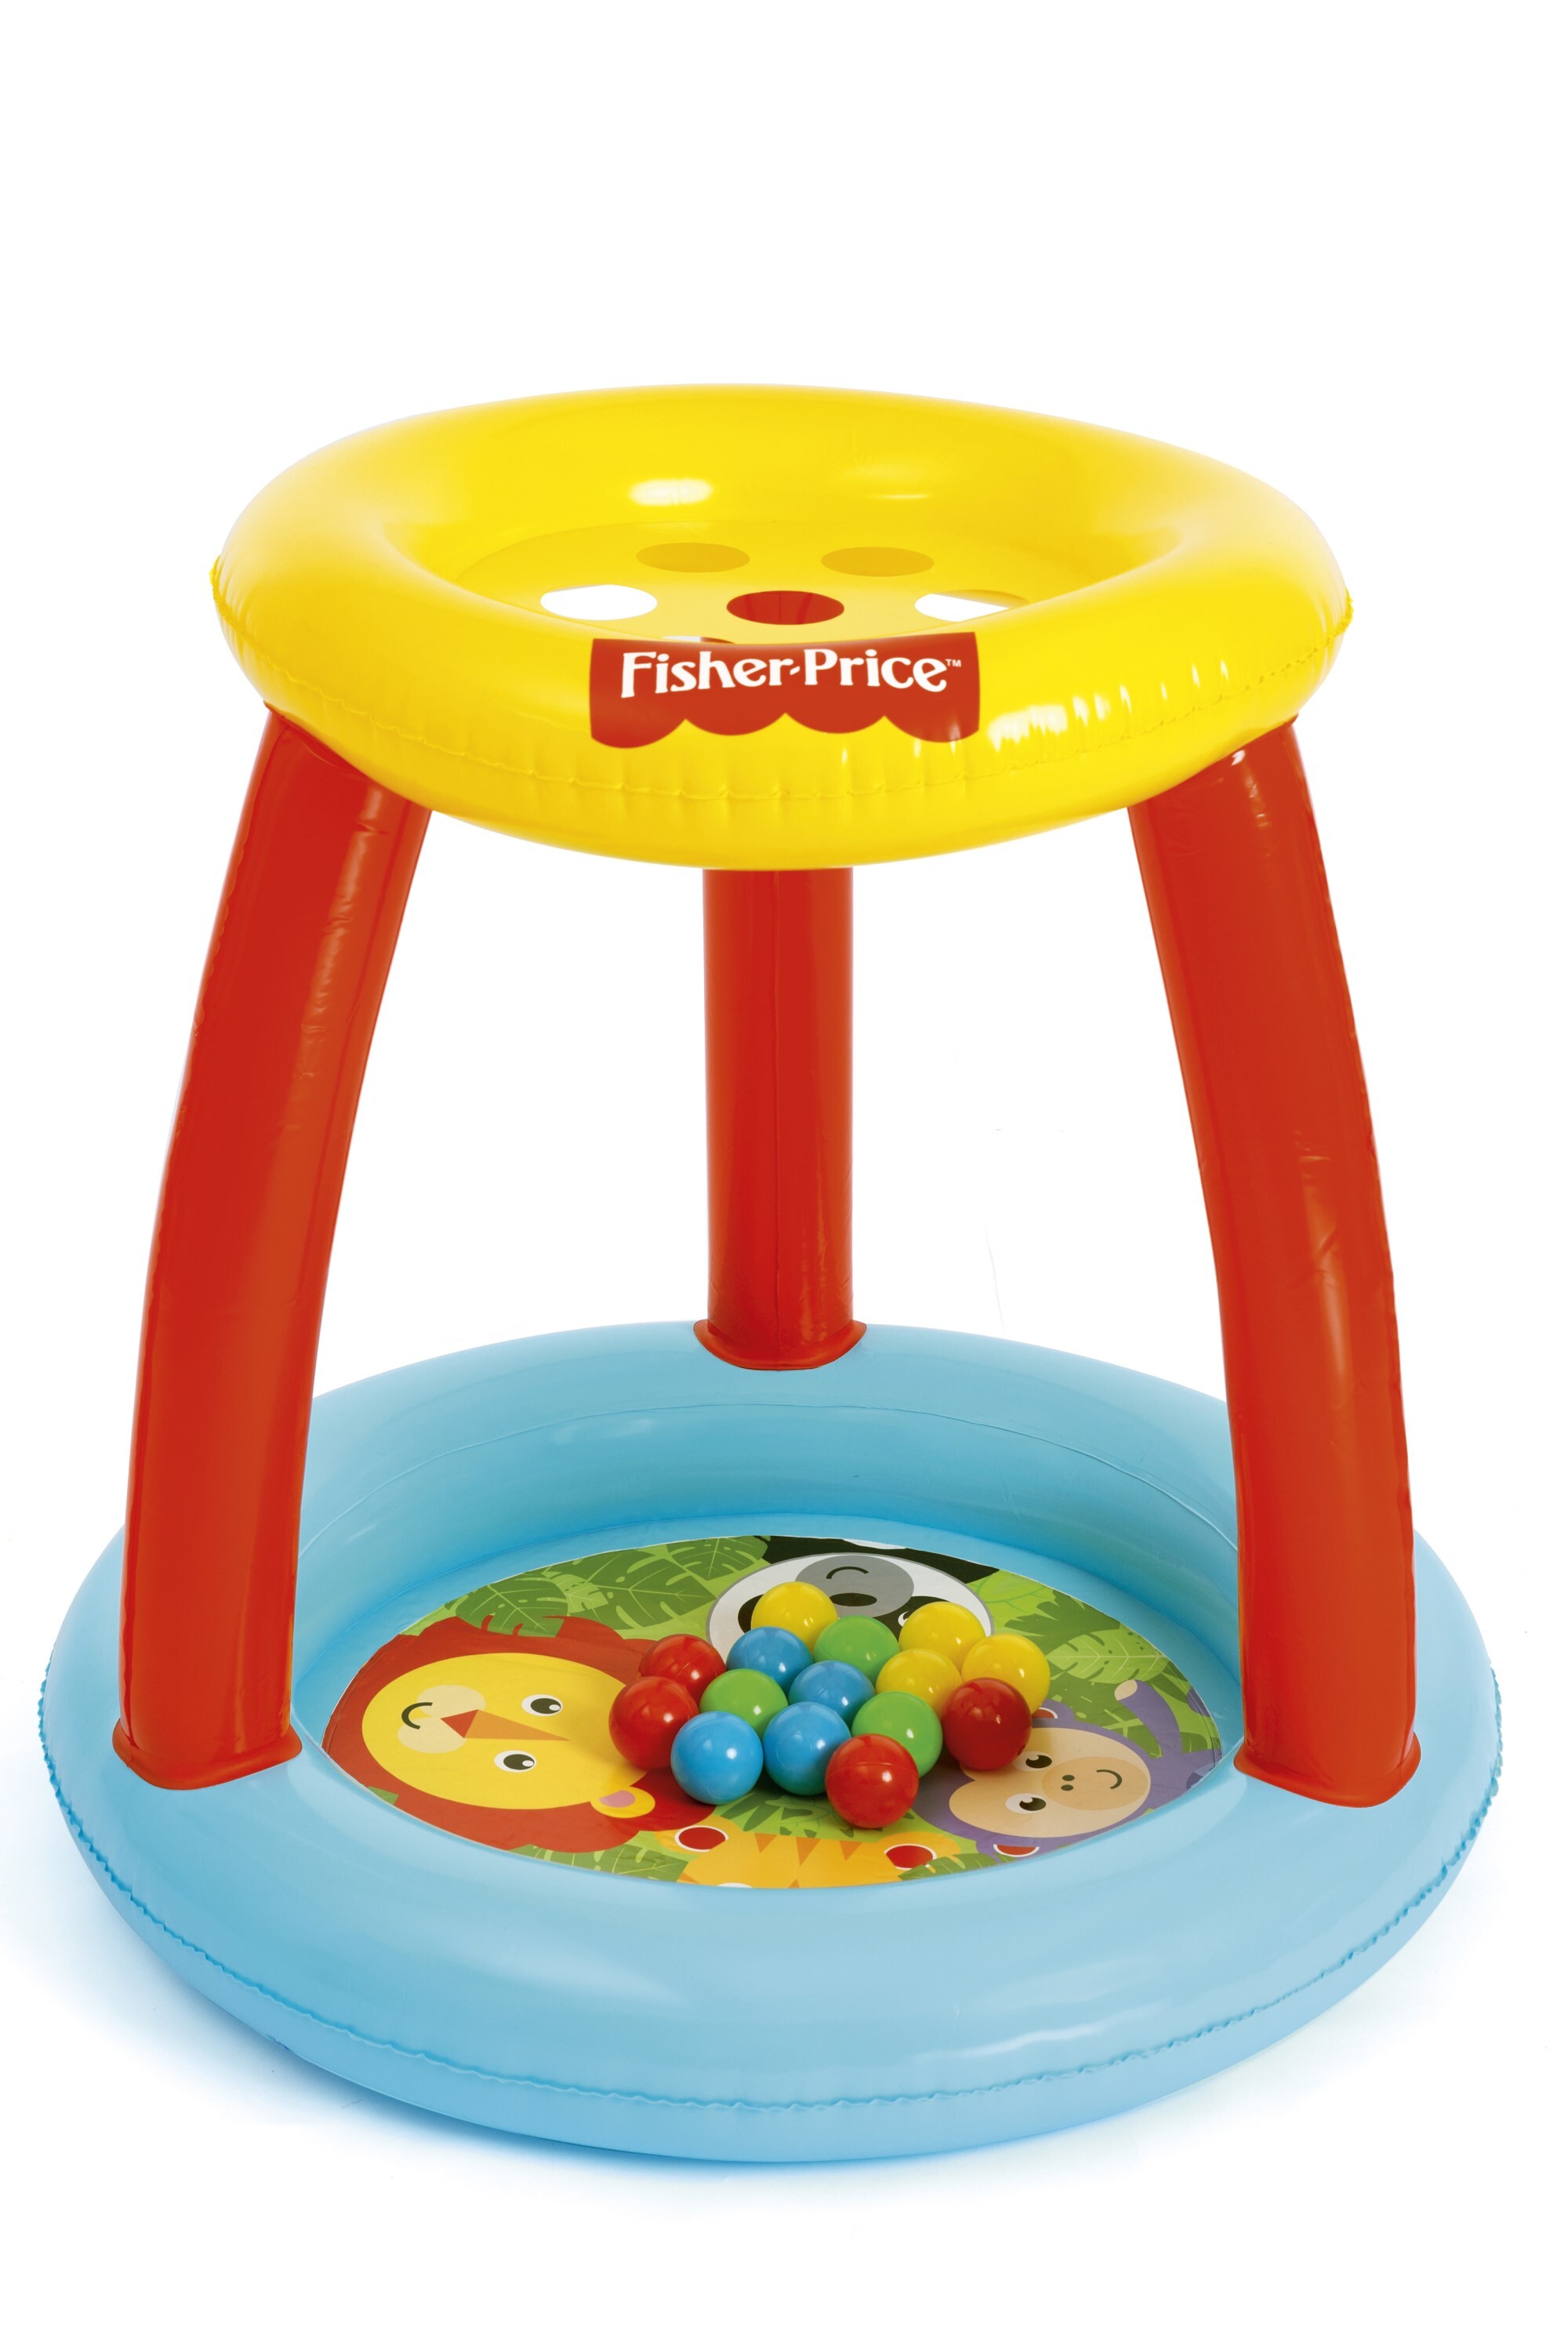 Bestway Fisher-Price playcenter dierenvriendjes ball pit